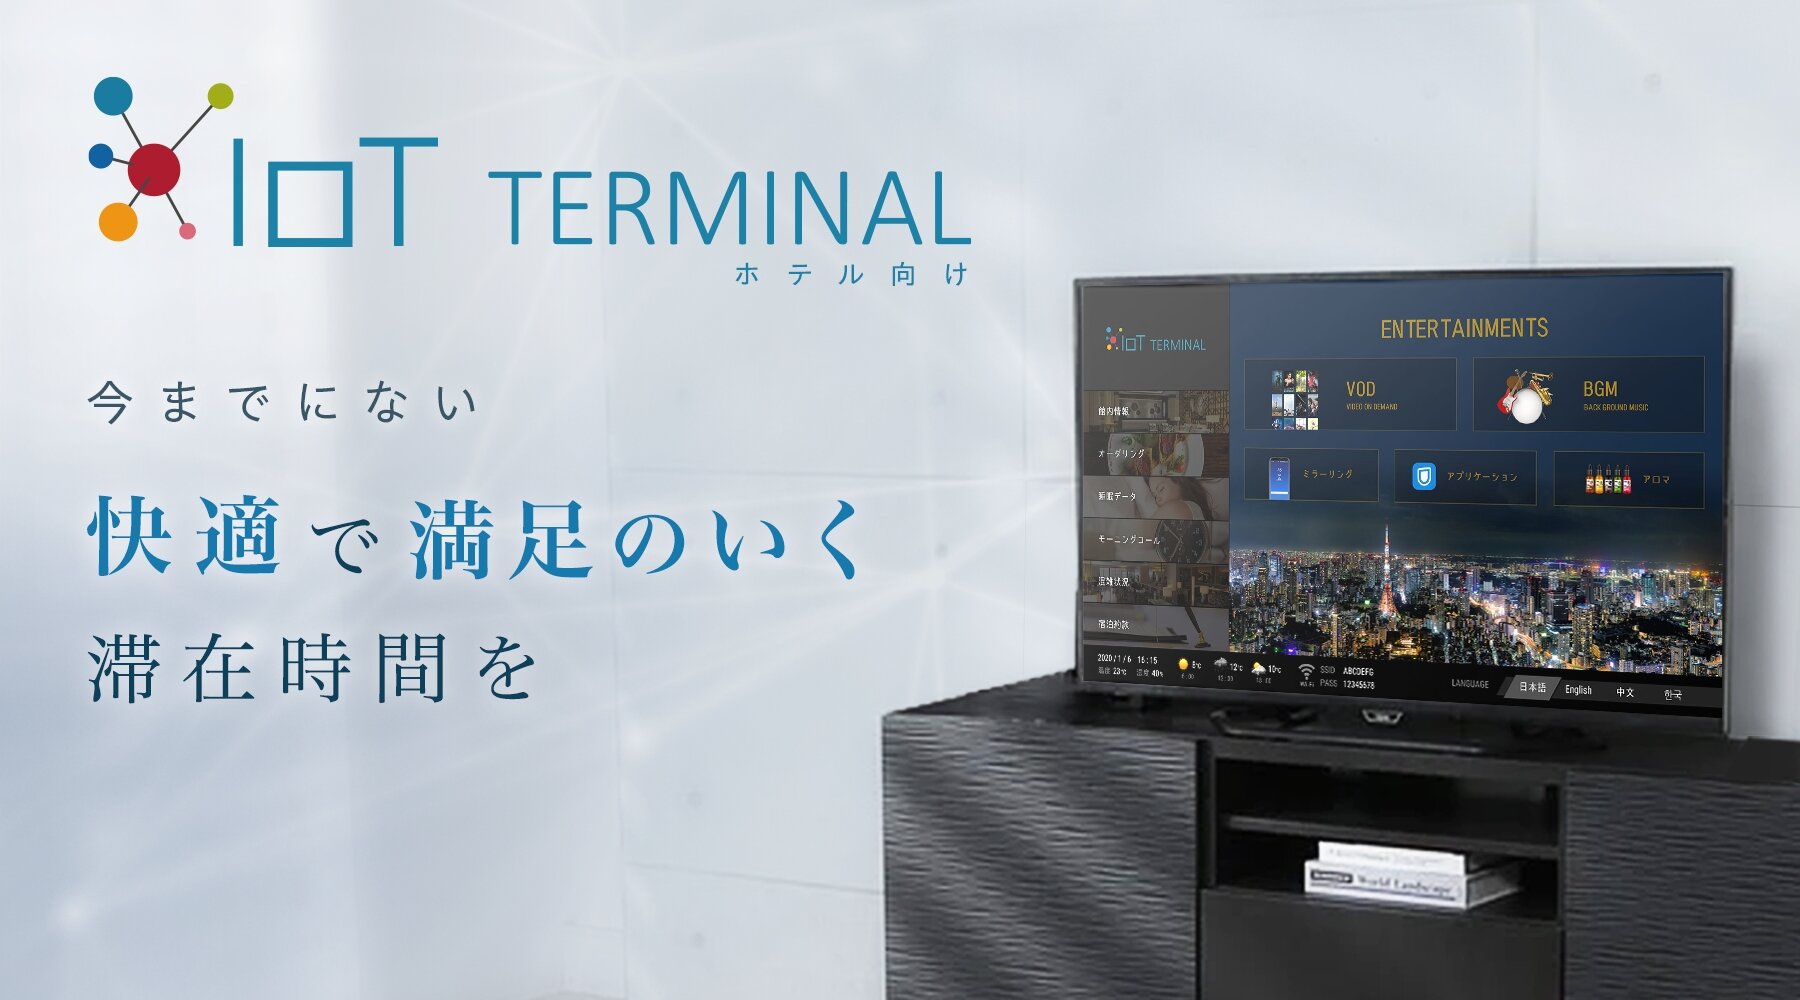 ホテル向け客室インフォメーションシステム IoT TERMINAL | 株式会社 